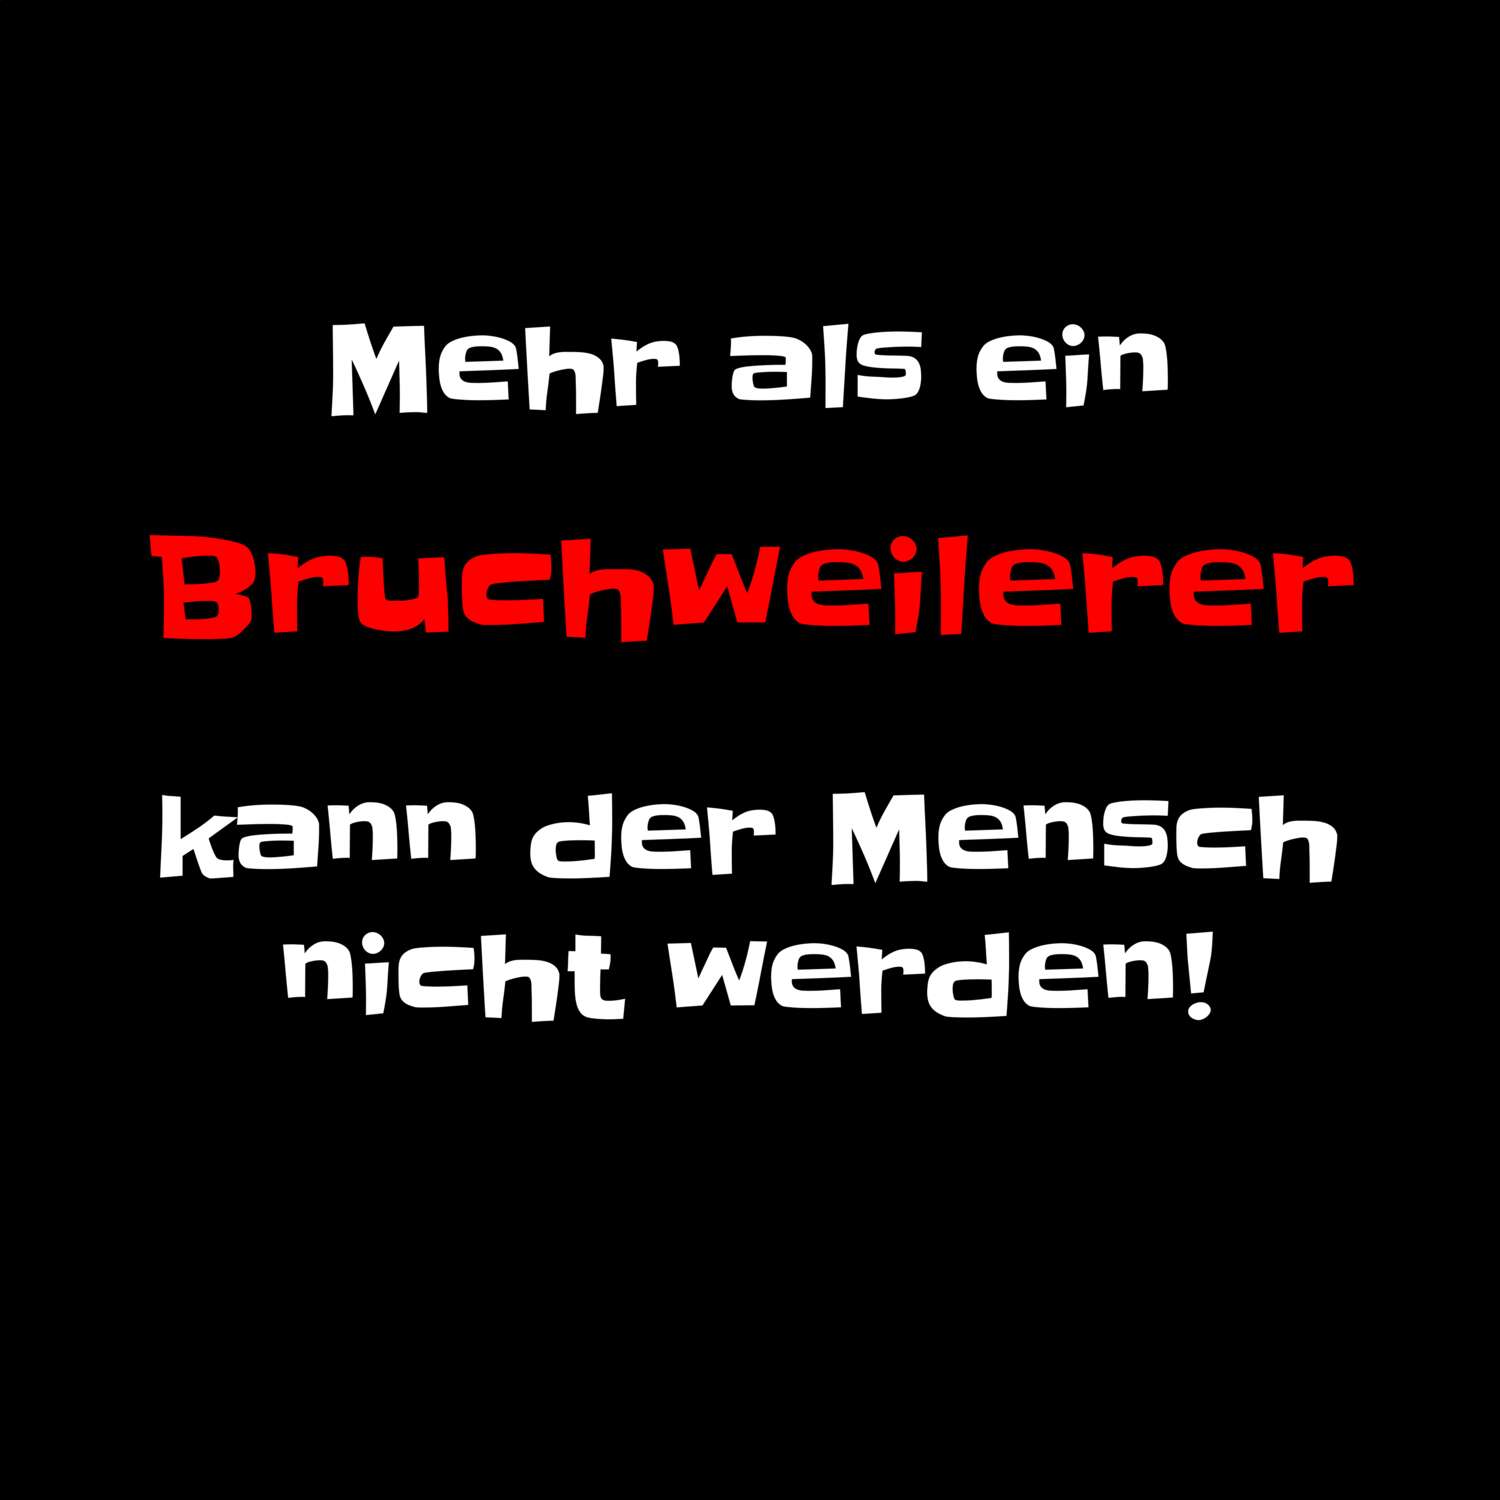 Bruchweiler T-Shirt »Mehr als ein«